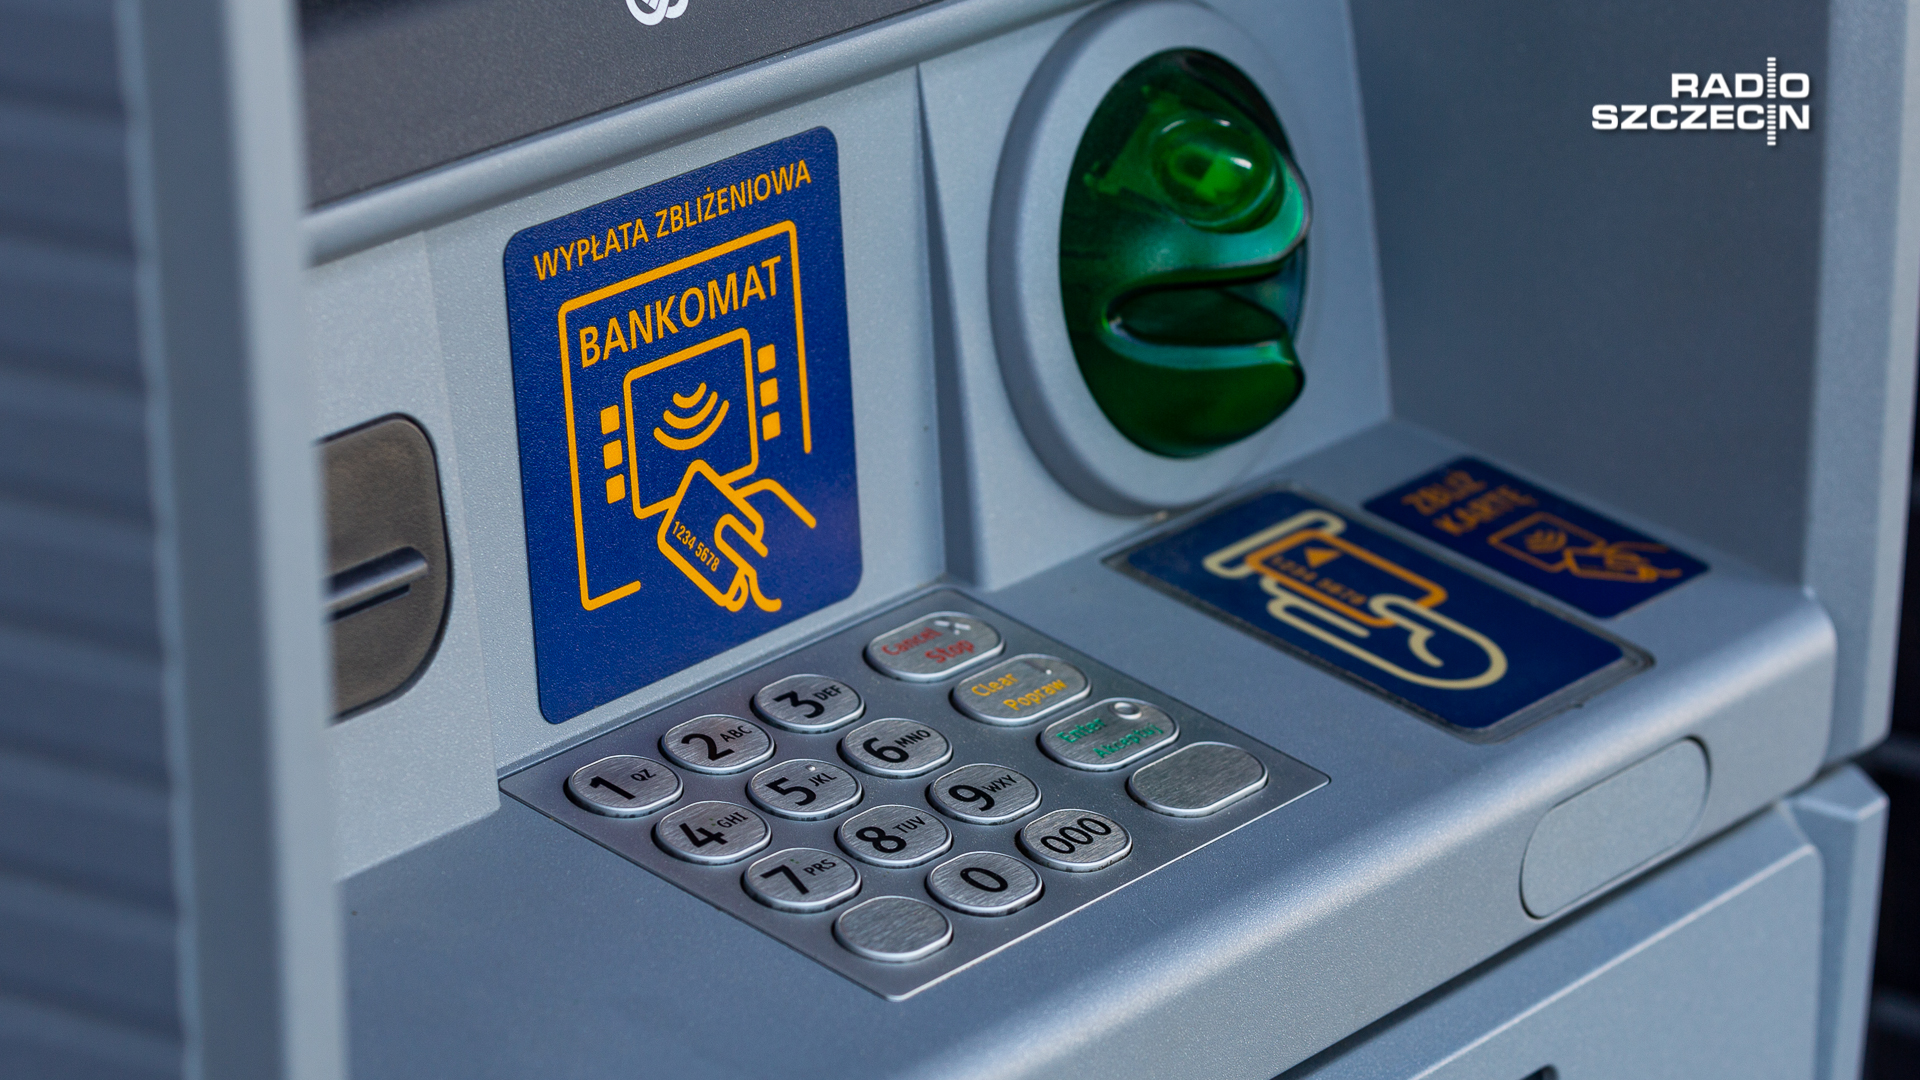 We wtorek tylko 200 złotych będzie można wypłacić z bankomatów należących do sieci Euronet. To forma protestu ogłoszonego przez jej właściciela.